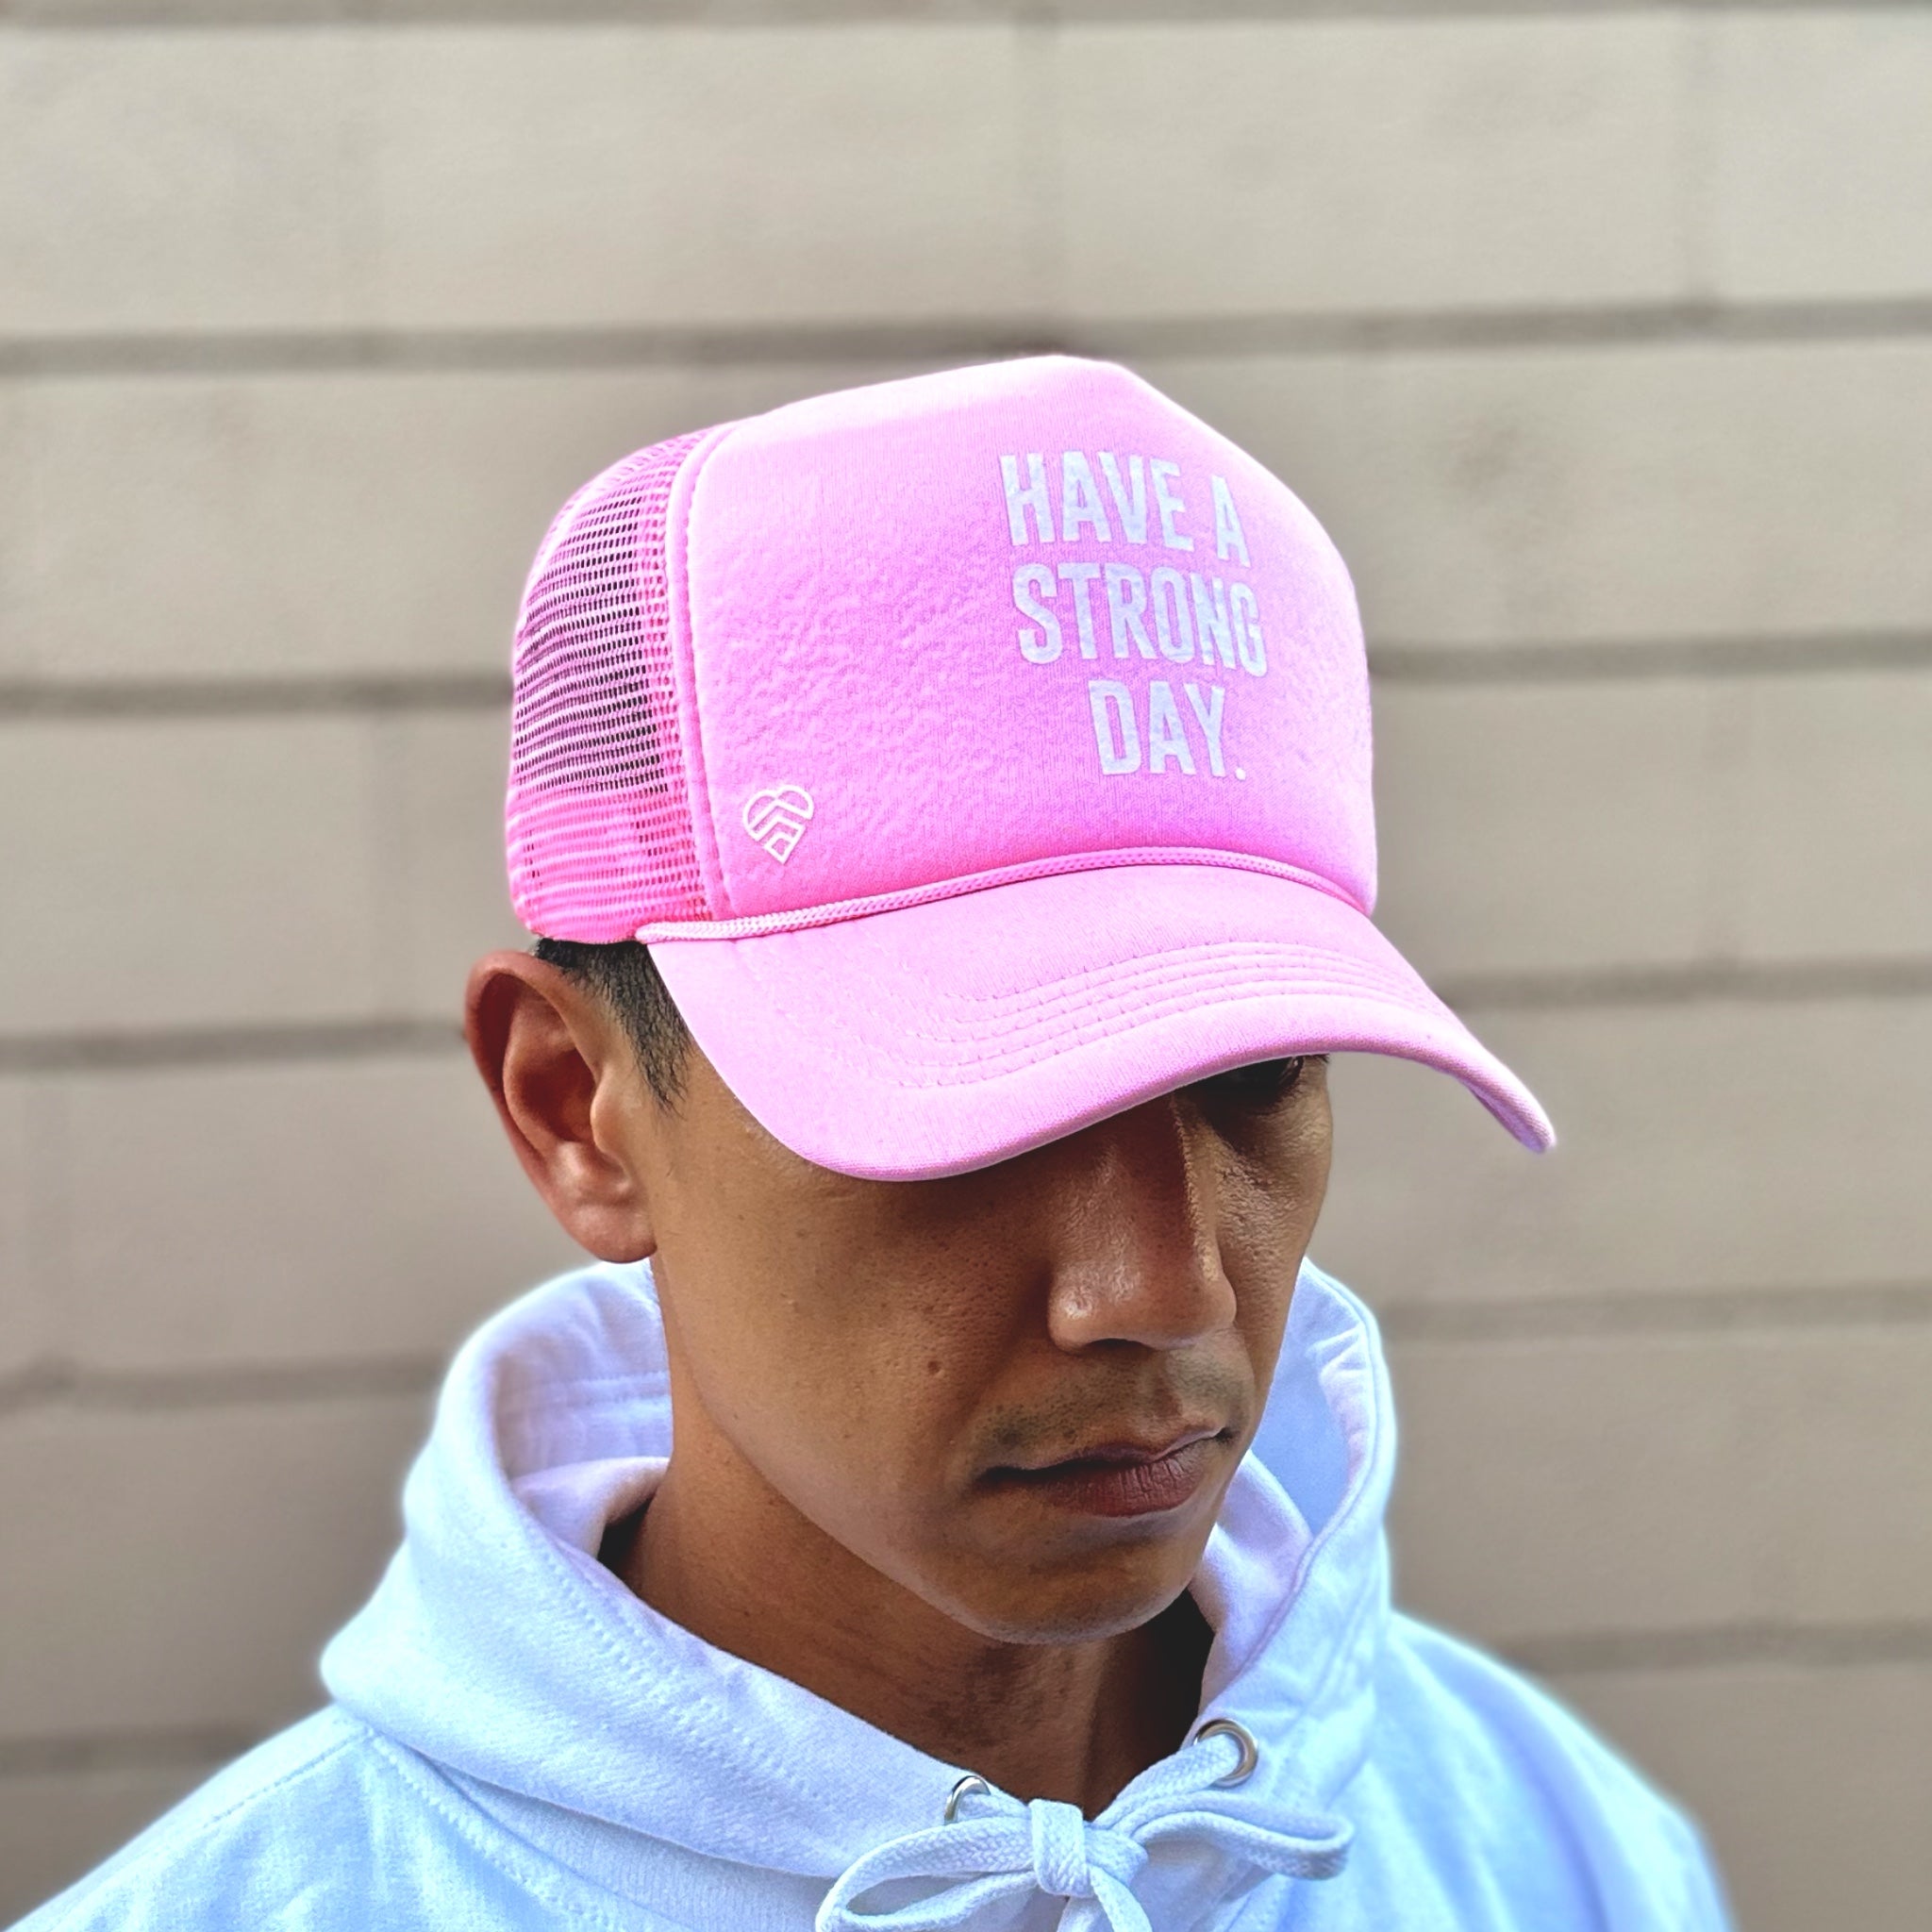 Slogan Statement High-Crown Trucker Hat - Pink